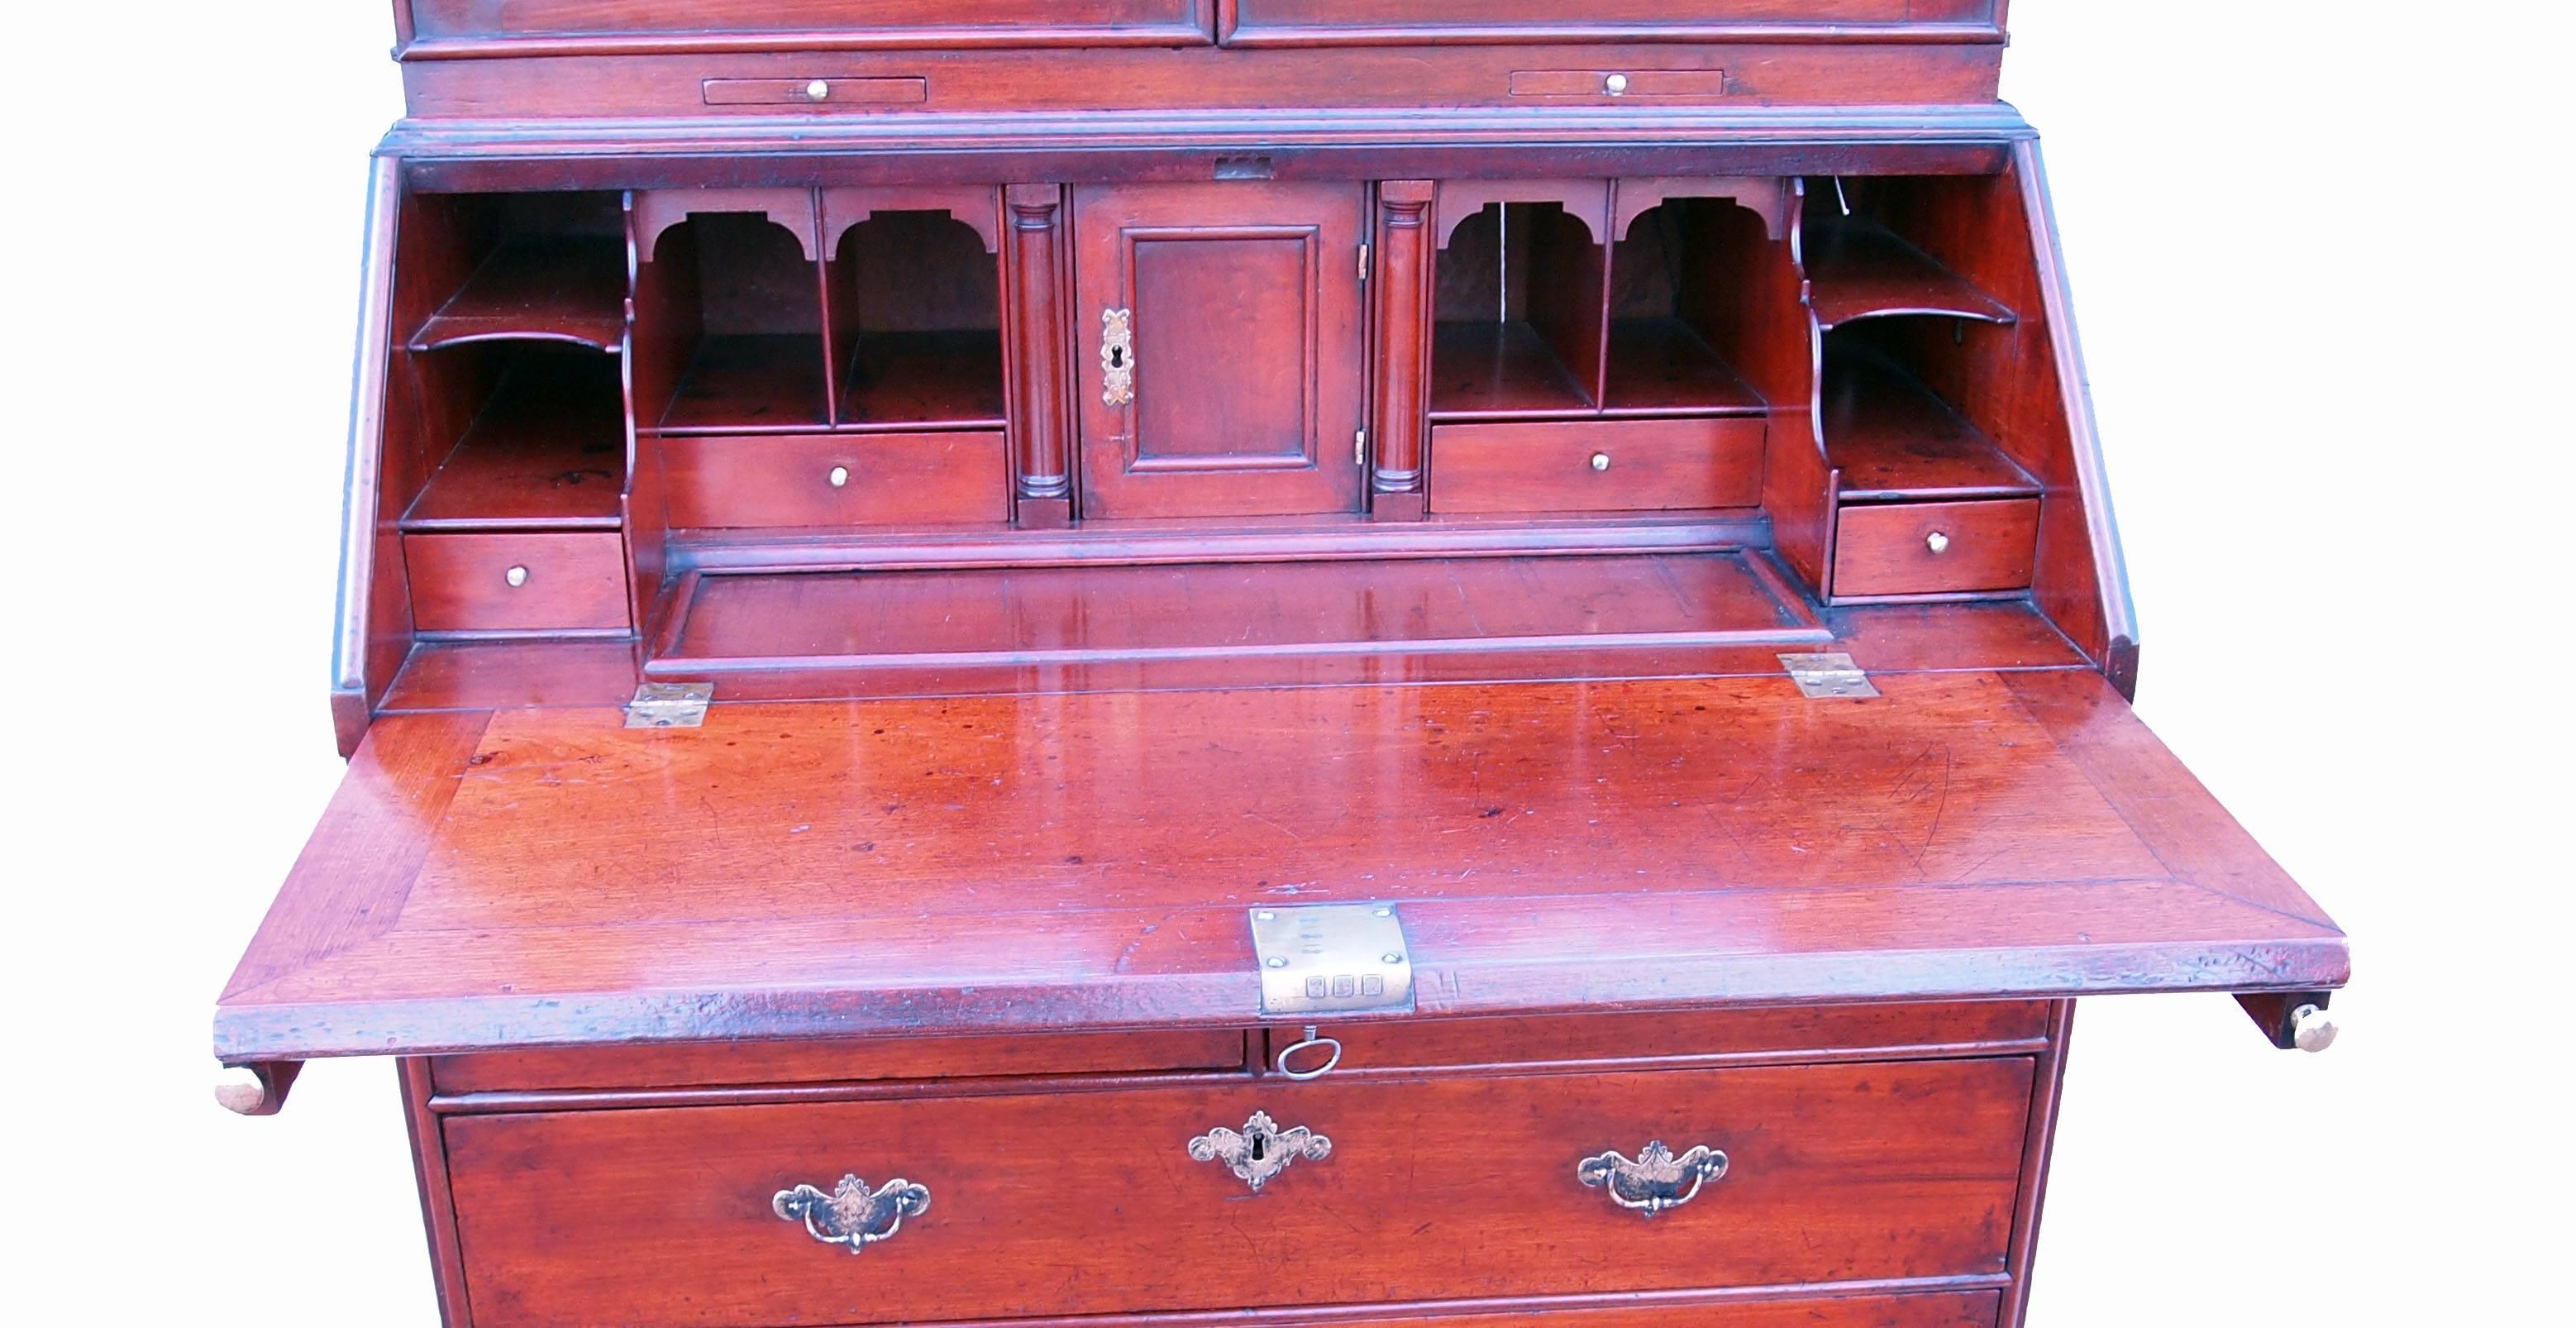 Ravissante bibliothèque de bureau en noyer massif du début du 18e siècle, avec un attrayant
double dôme avec plaques de miroir de remplacement aux portes à panneaux
enfermant un intérieur bien ajusté au-dessus d'une chute bien figurée, deux